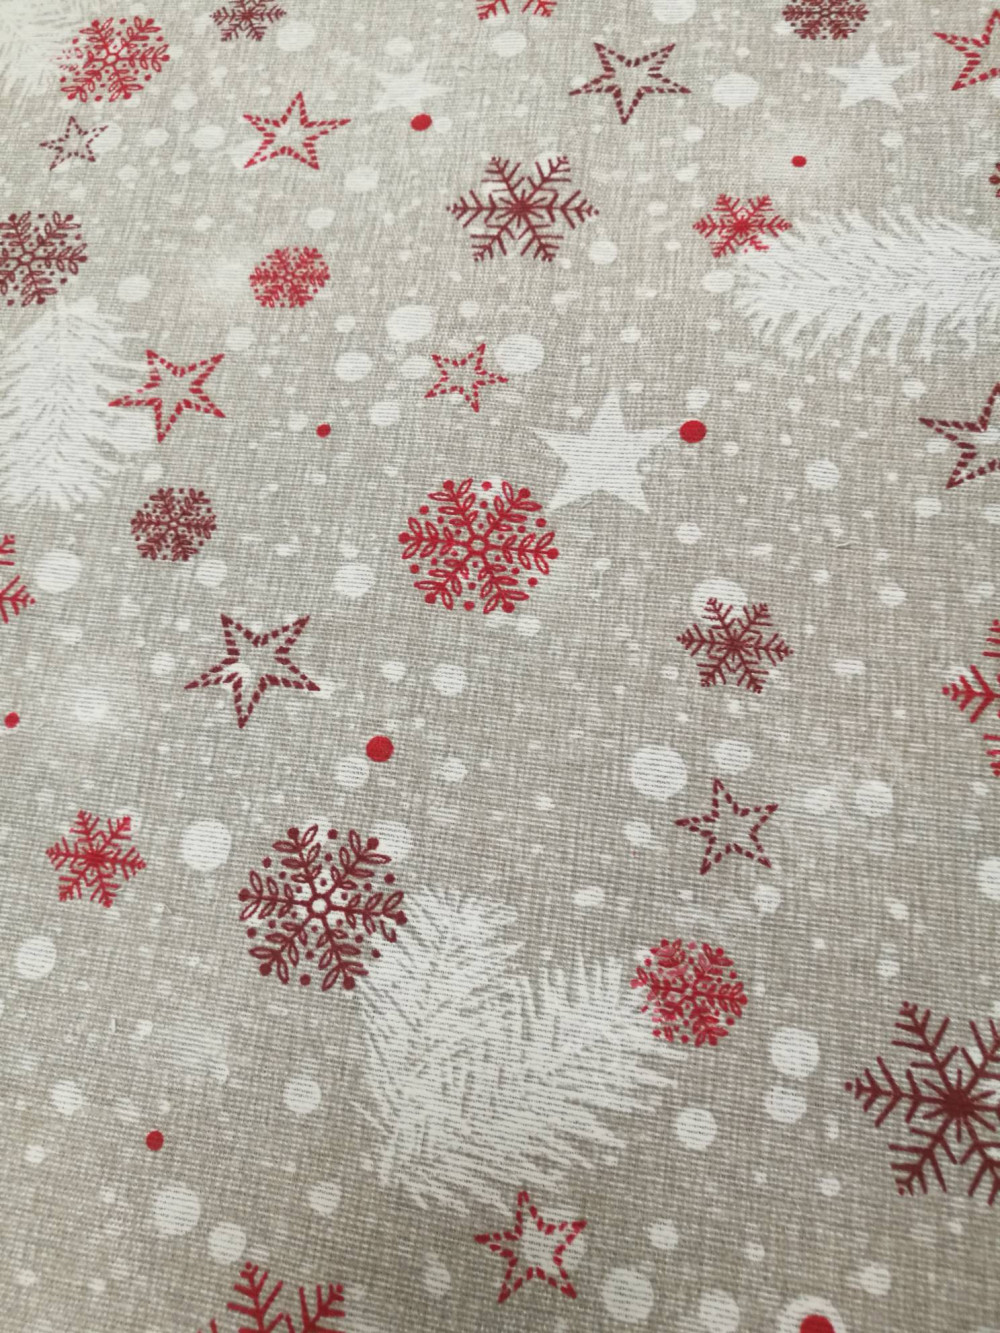 Ткань для штор SNOWY красные снежинки и звездочки на светло-сером фоне